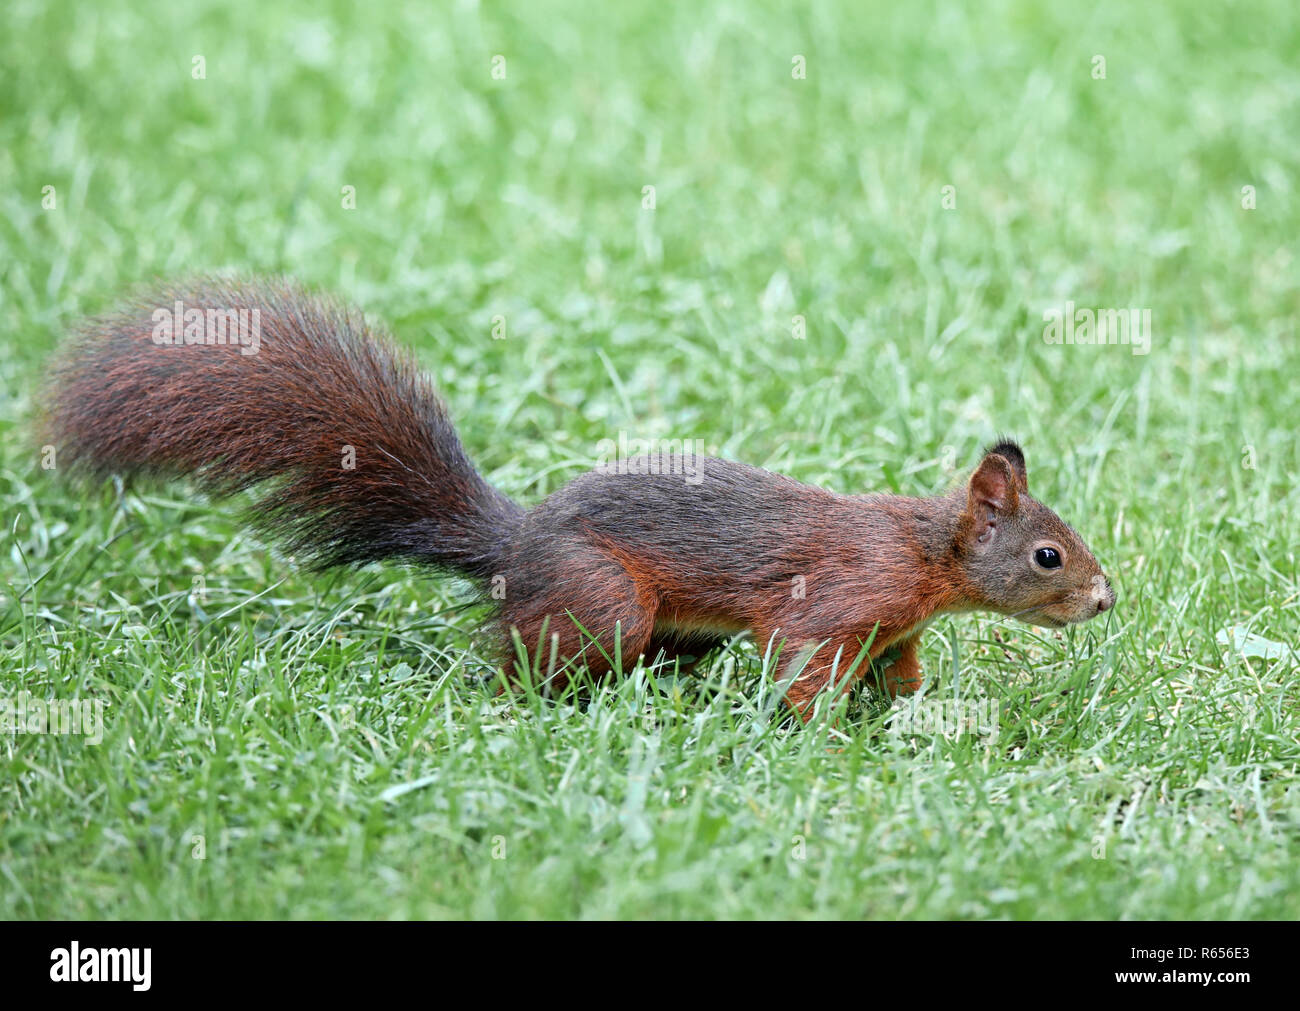 squirrel sciurus vulgaris hops through the grass Stock Photo